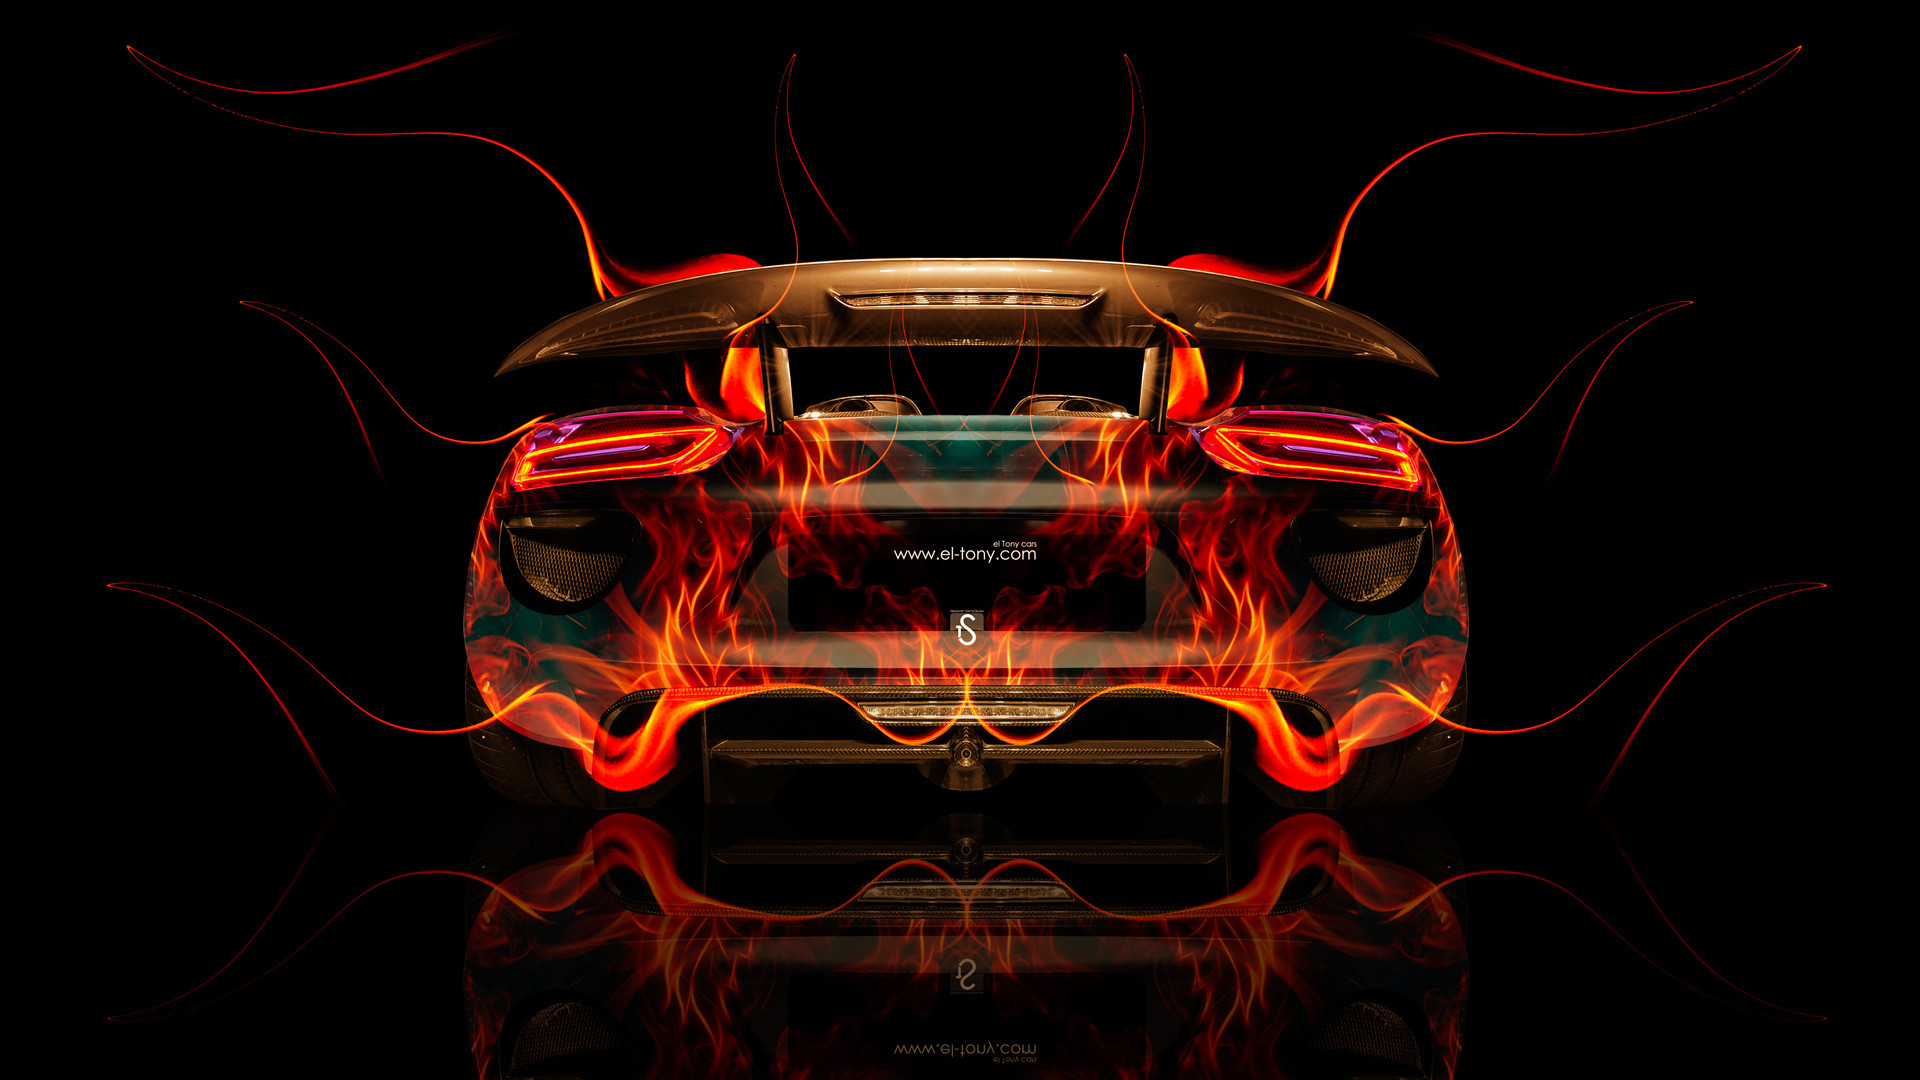 1920x1080 ... Porsche 918 Back Fire Abstract Car 2014